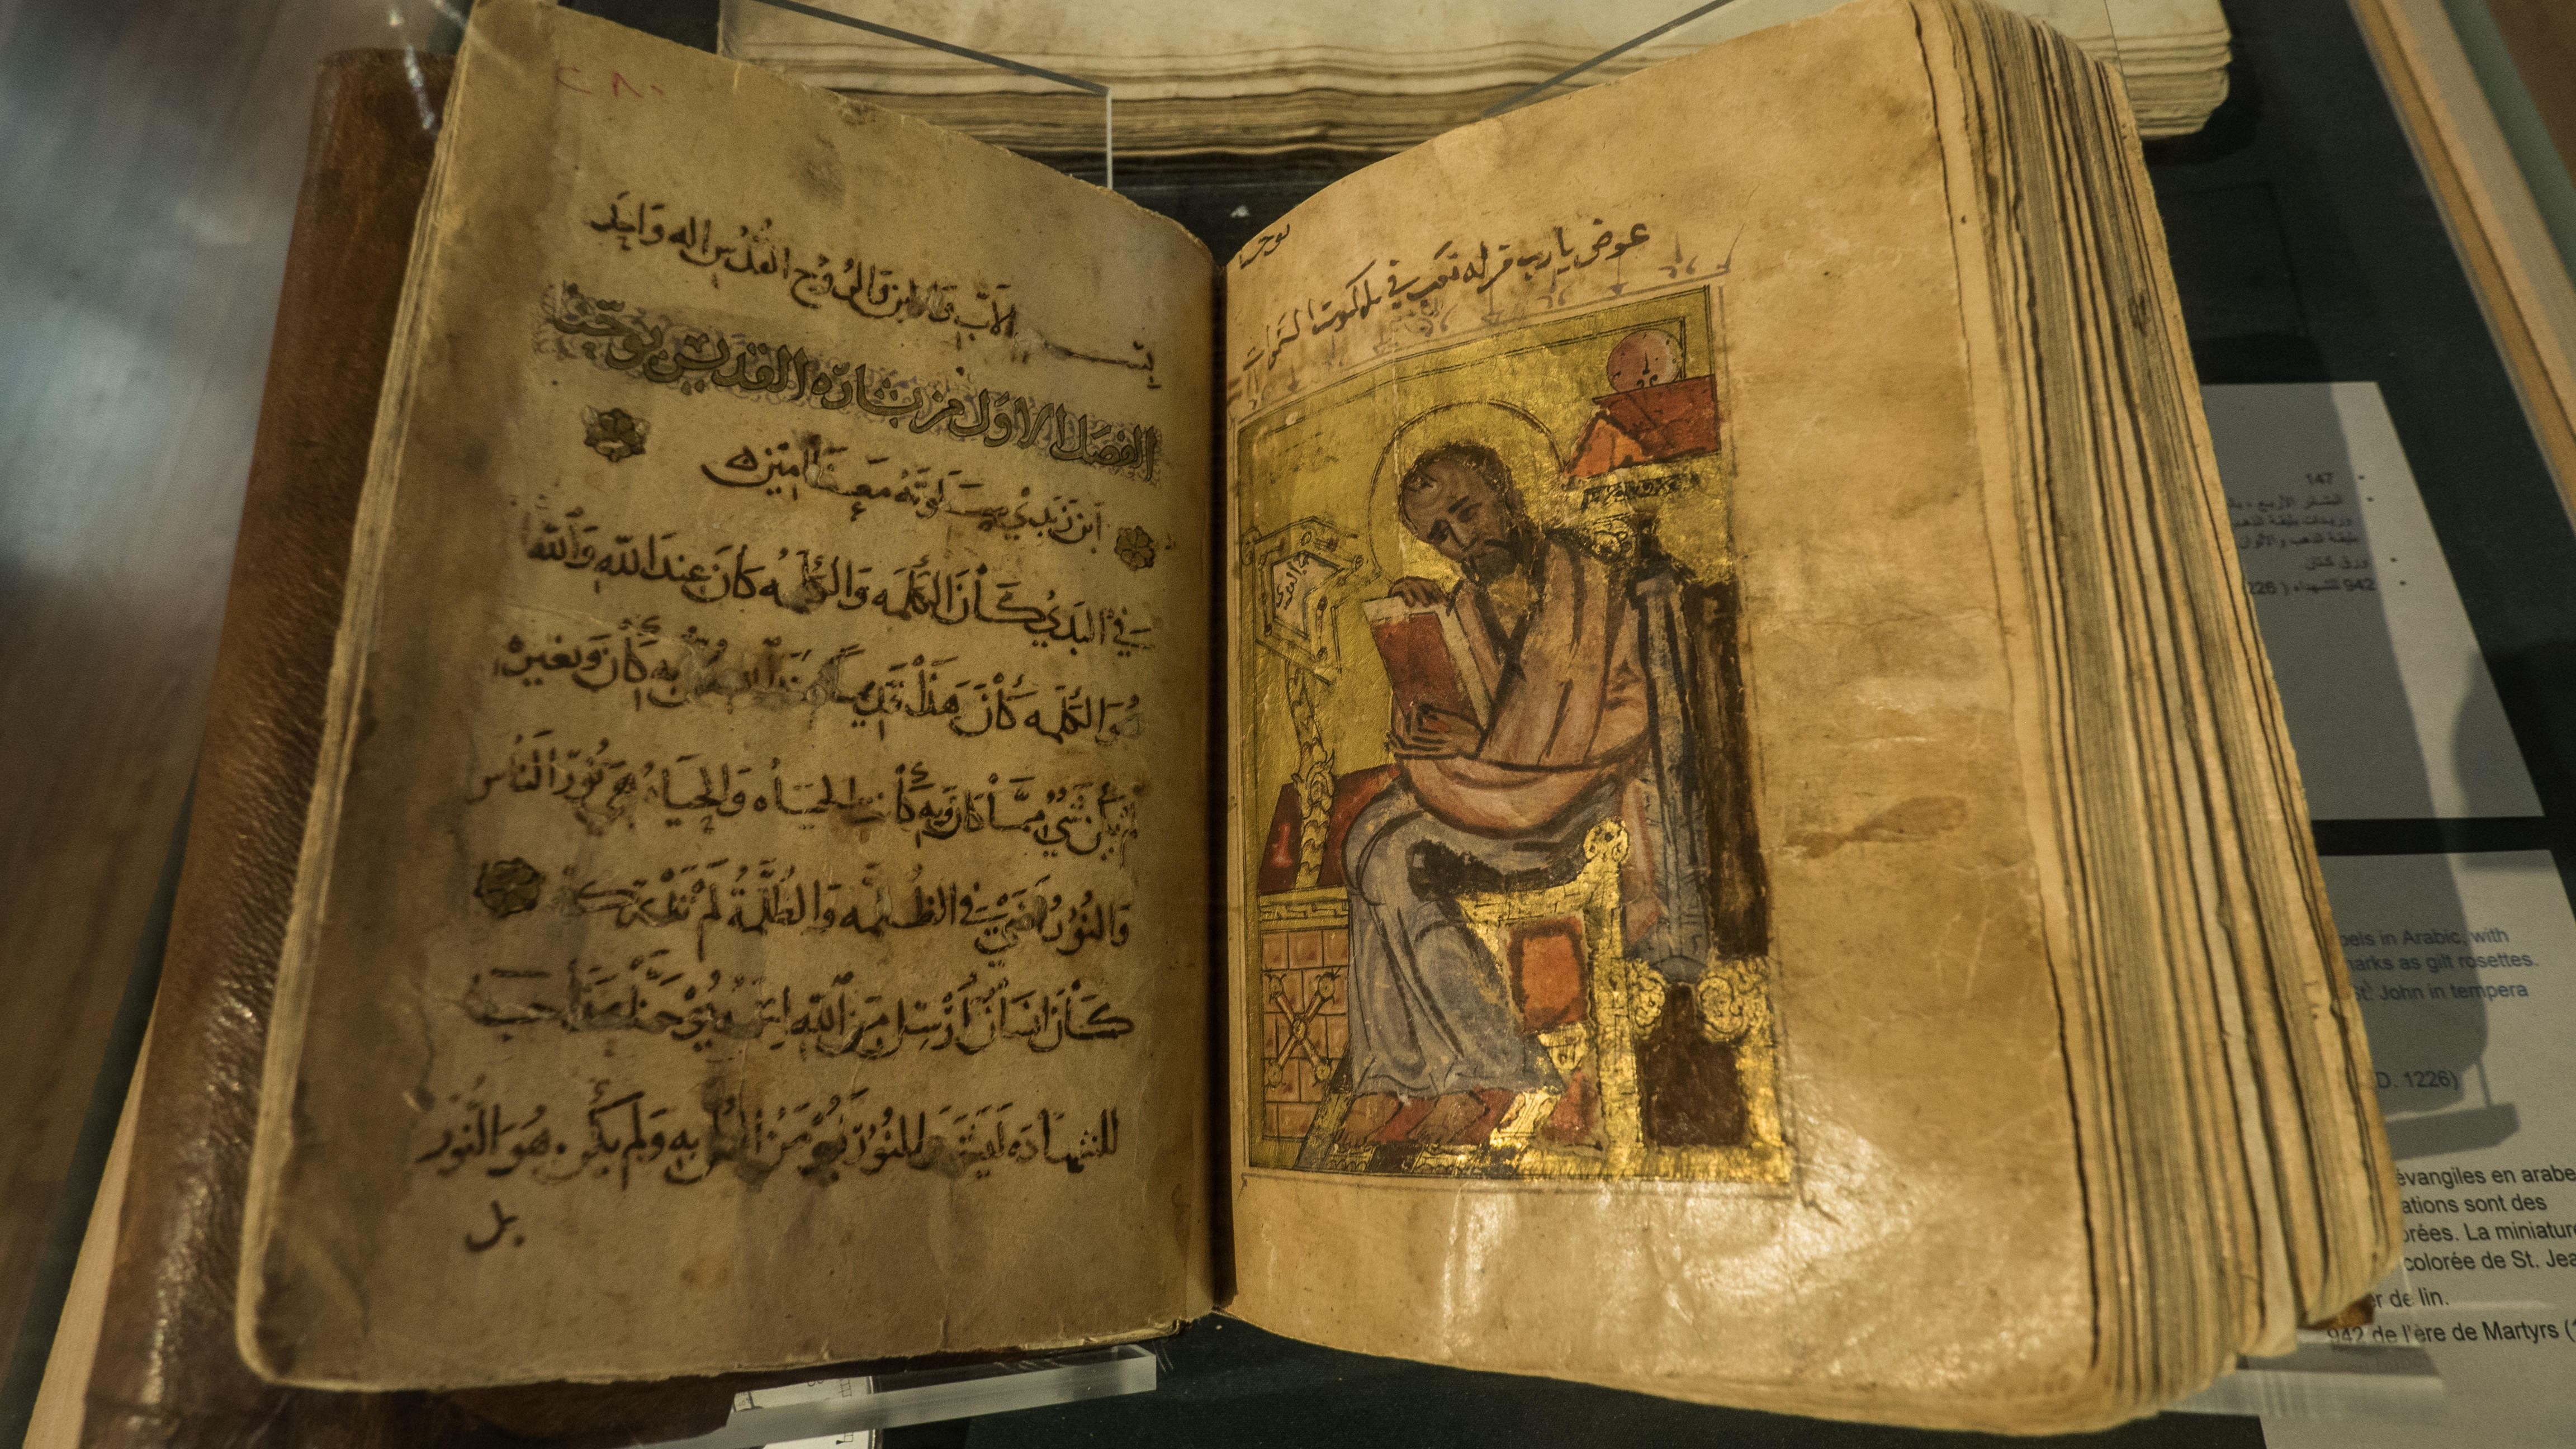 Marvel at the Nag Hammadi Manuscripts